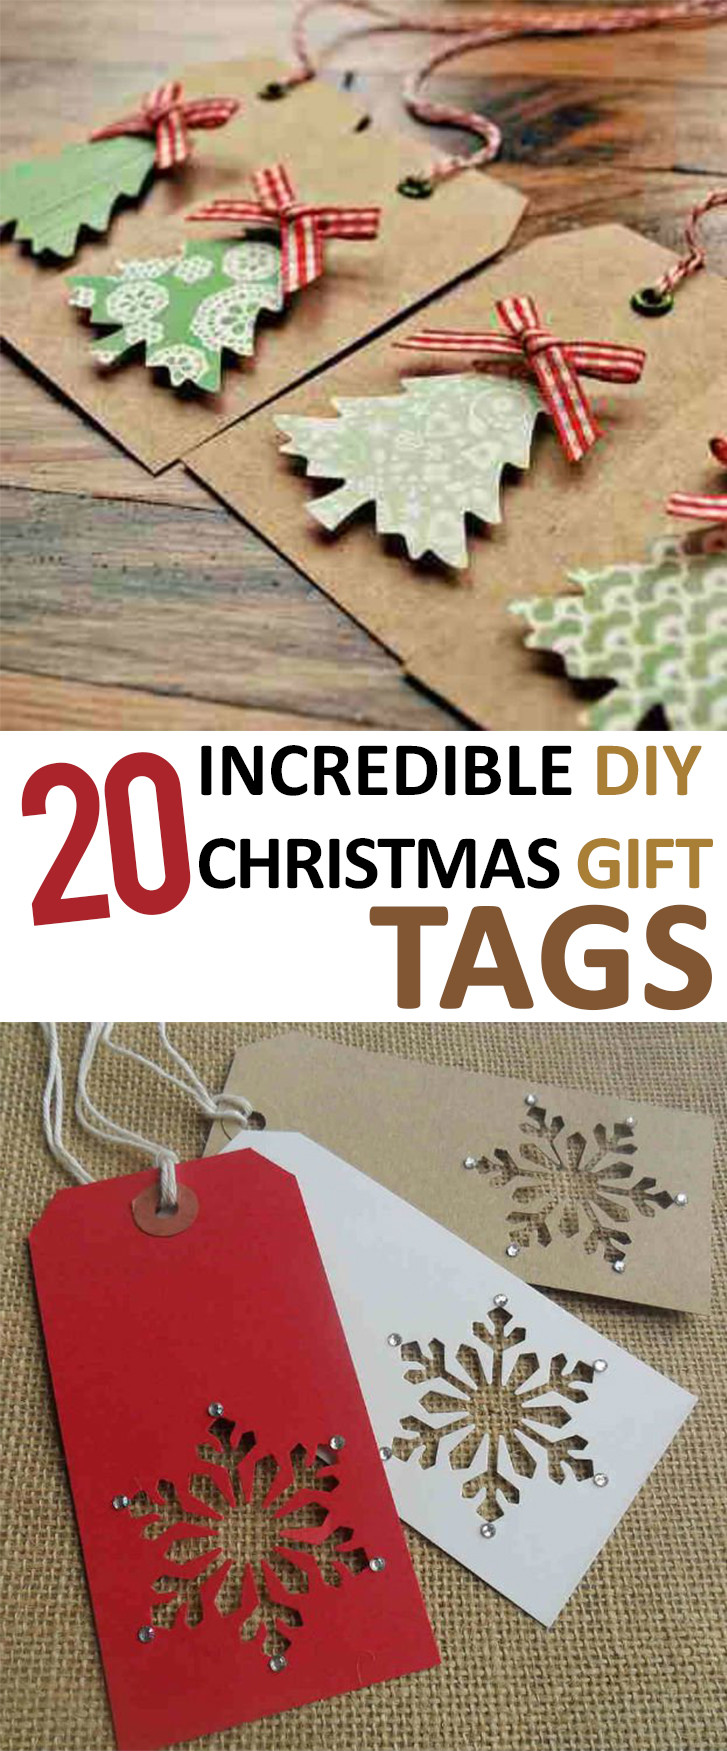 Gift Tags DIY
 20 Incredible DIY Christmas Gift Tags